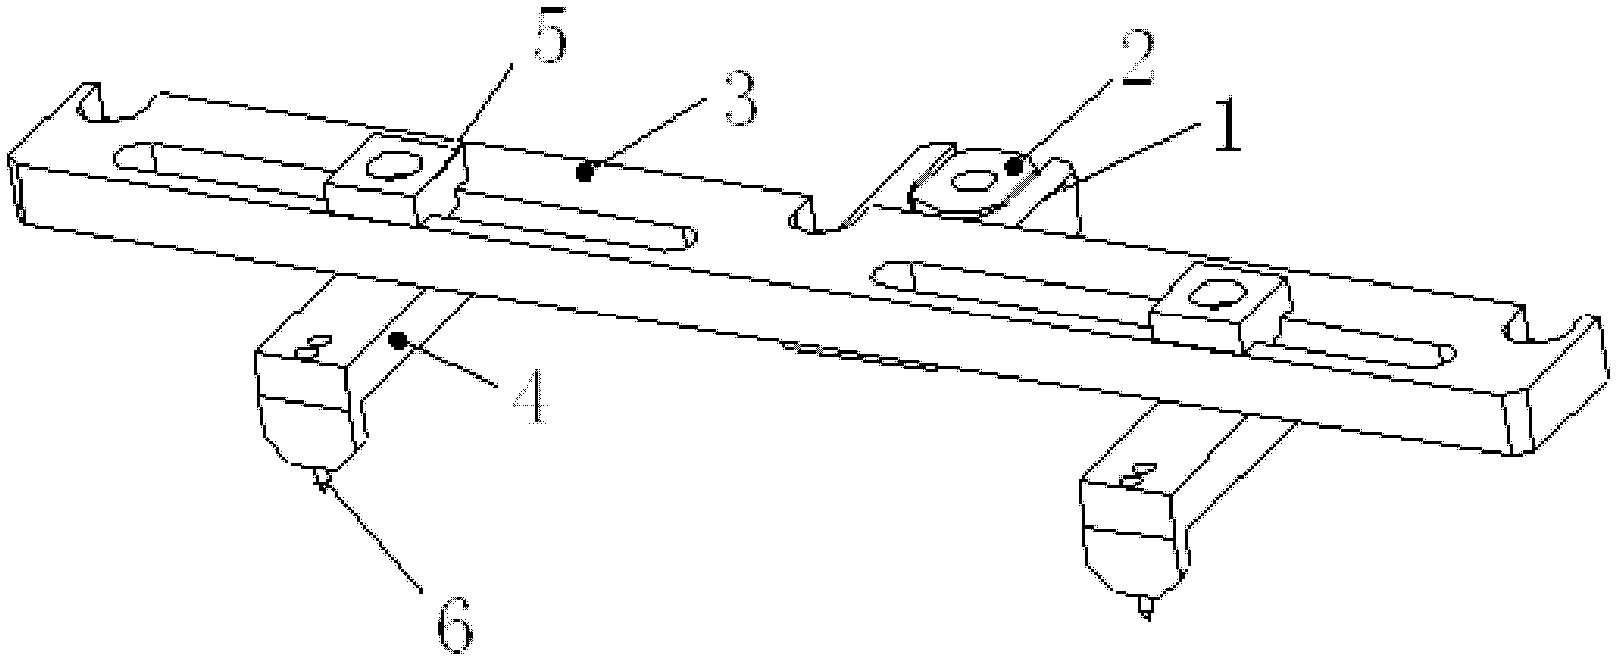 Positioning system for laser printer